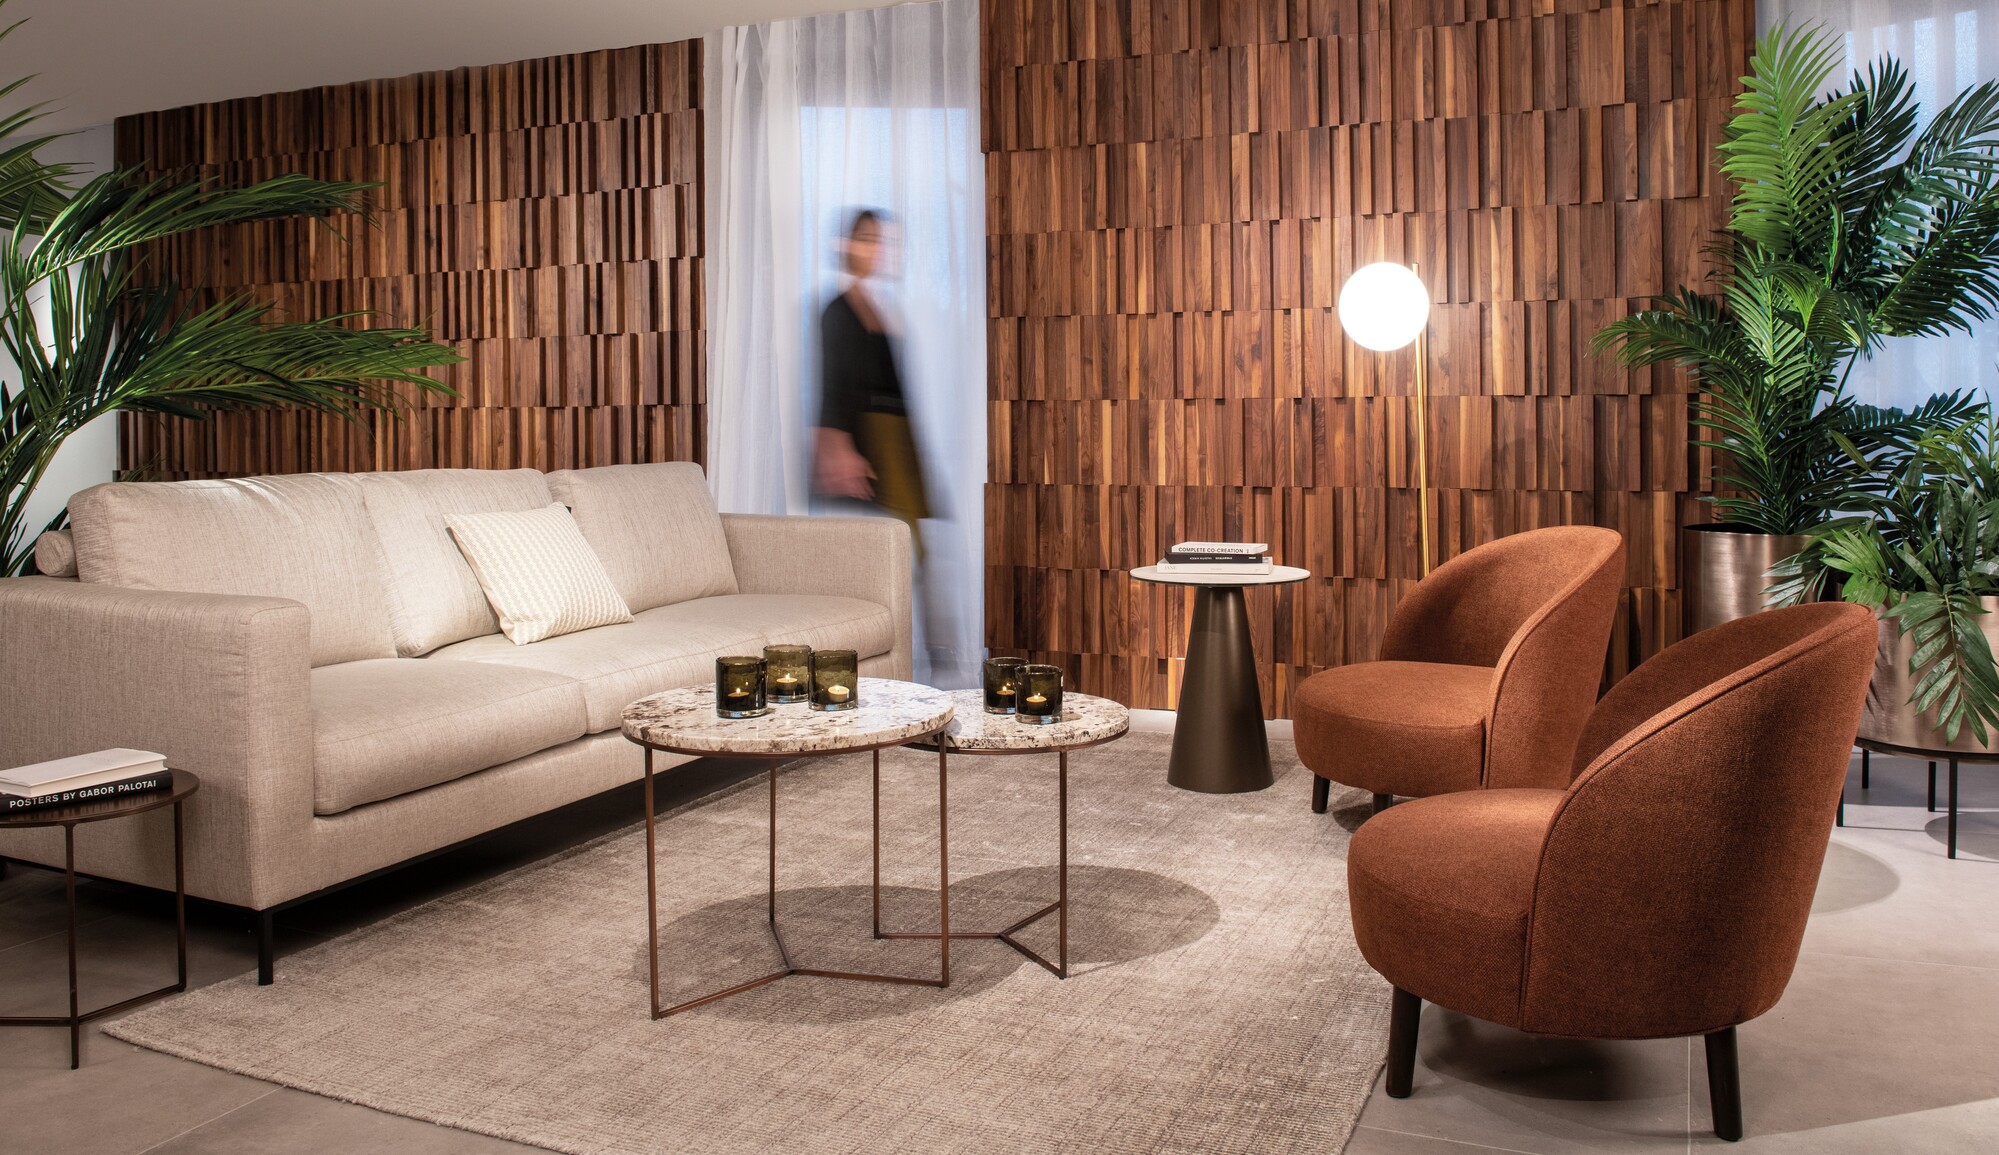 Nieuw: interieurlabel Dôme Deco opent eigen concept stores